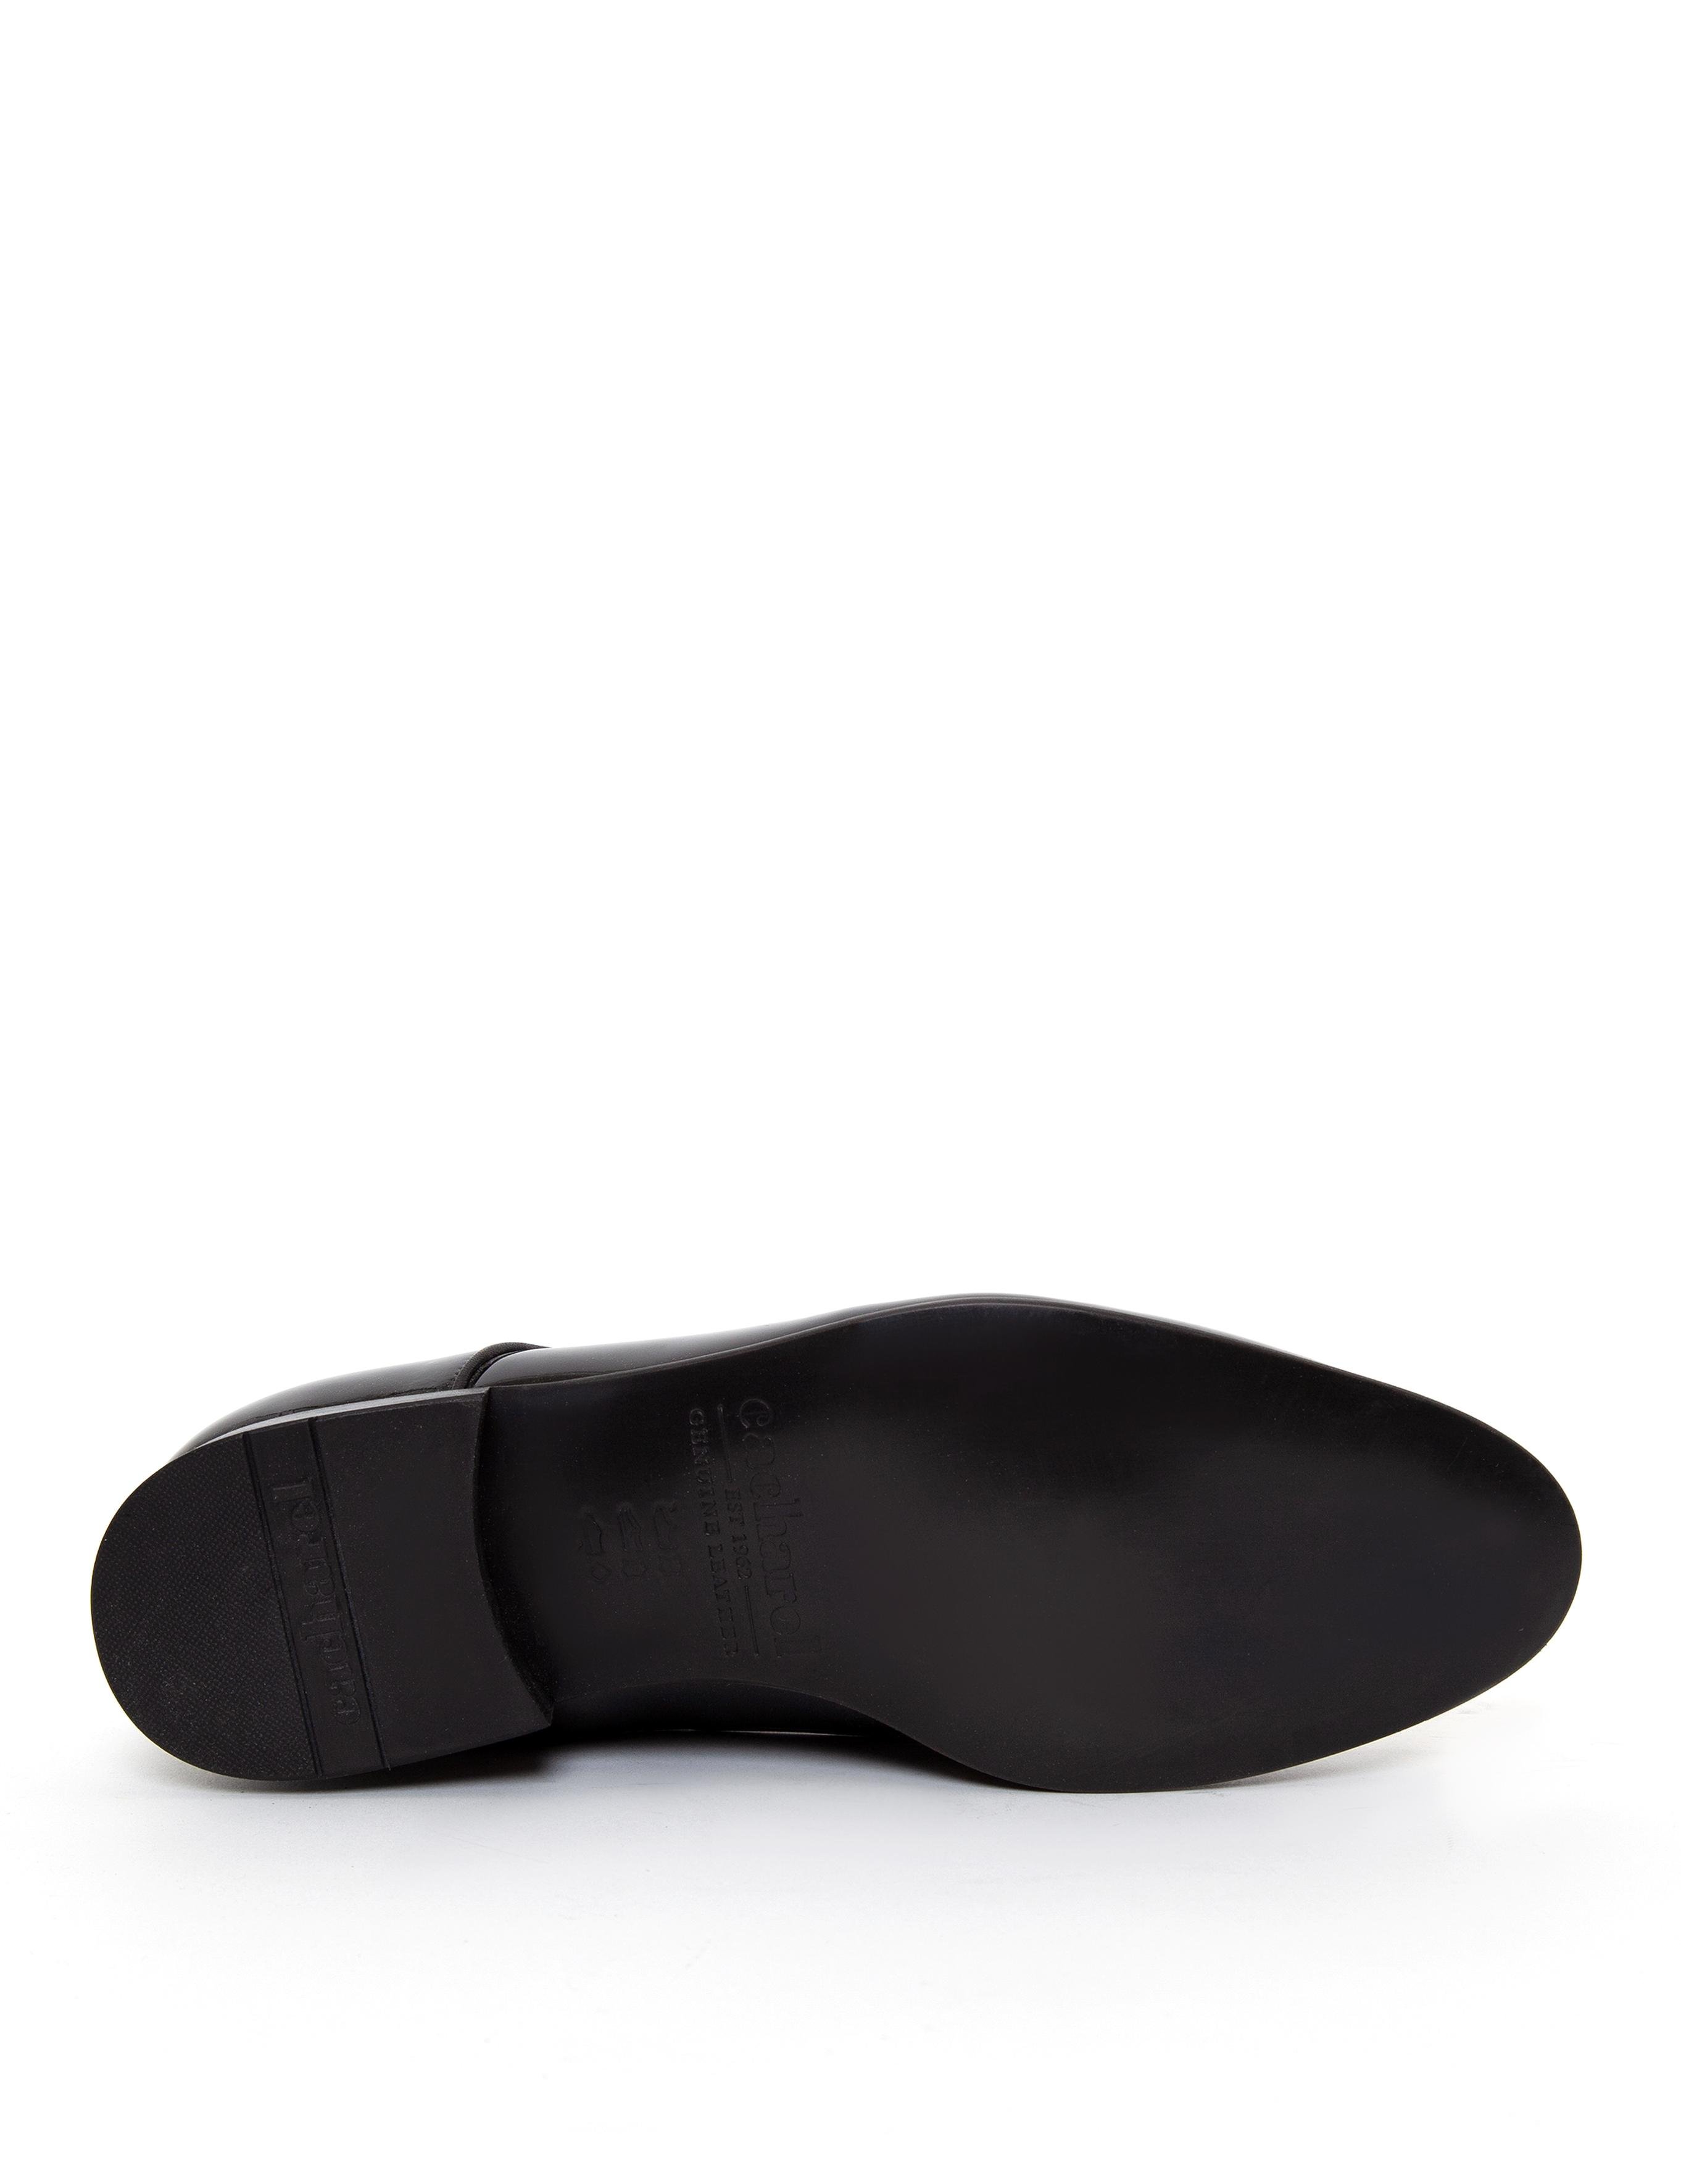 Siyah Klasik Ayakkabı - 50255466006